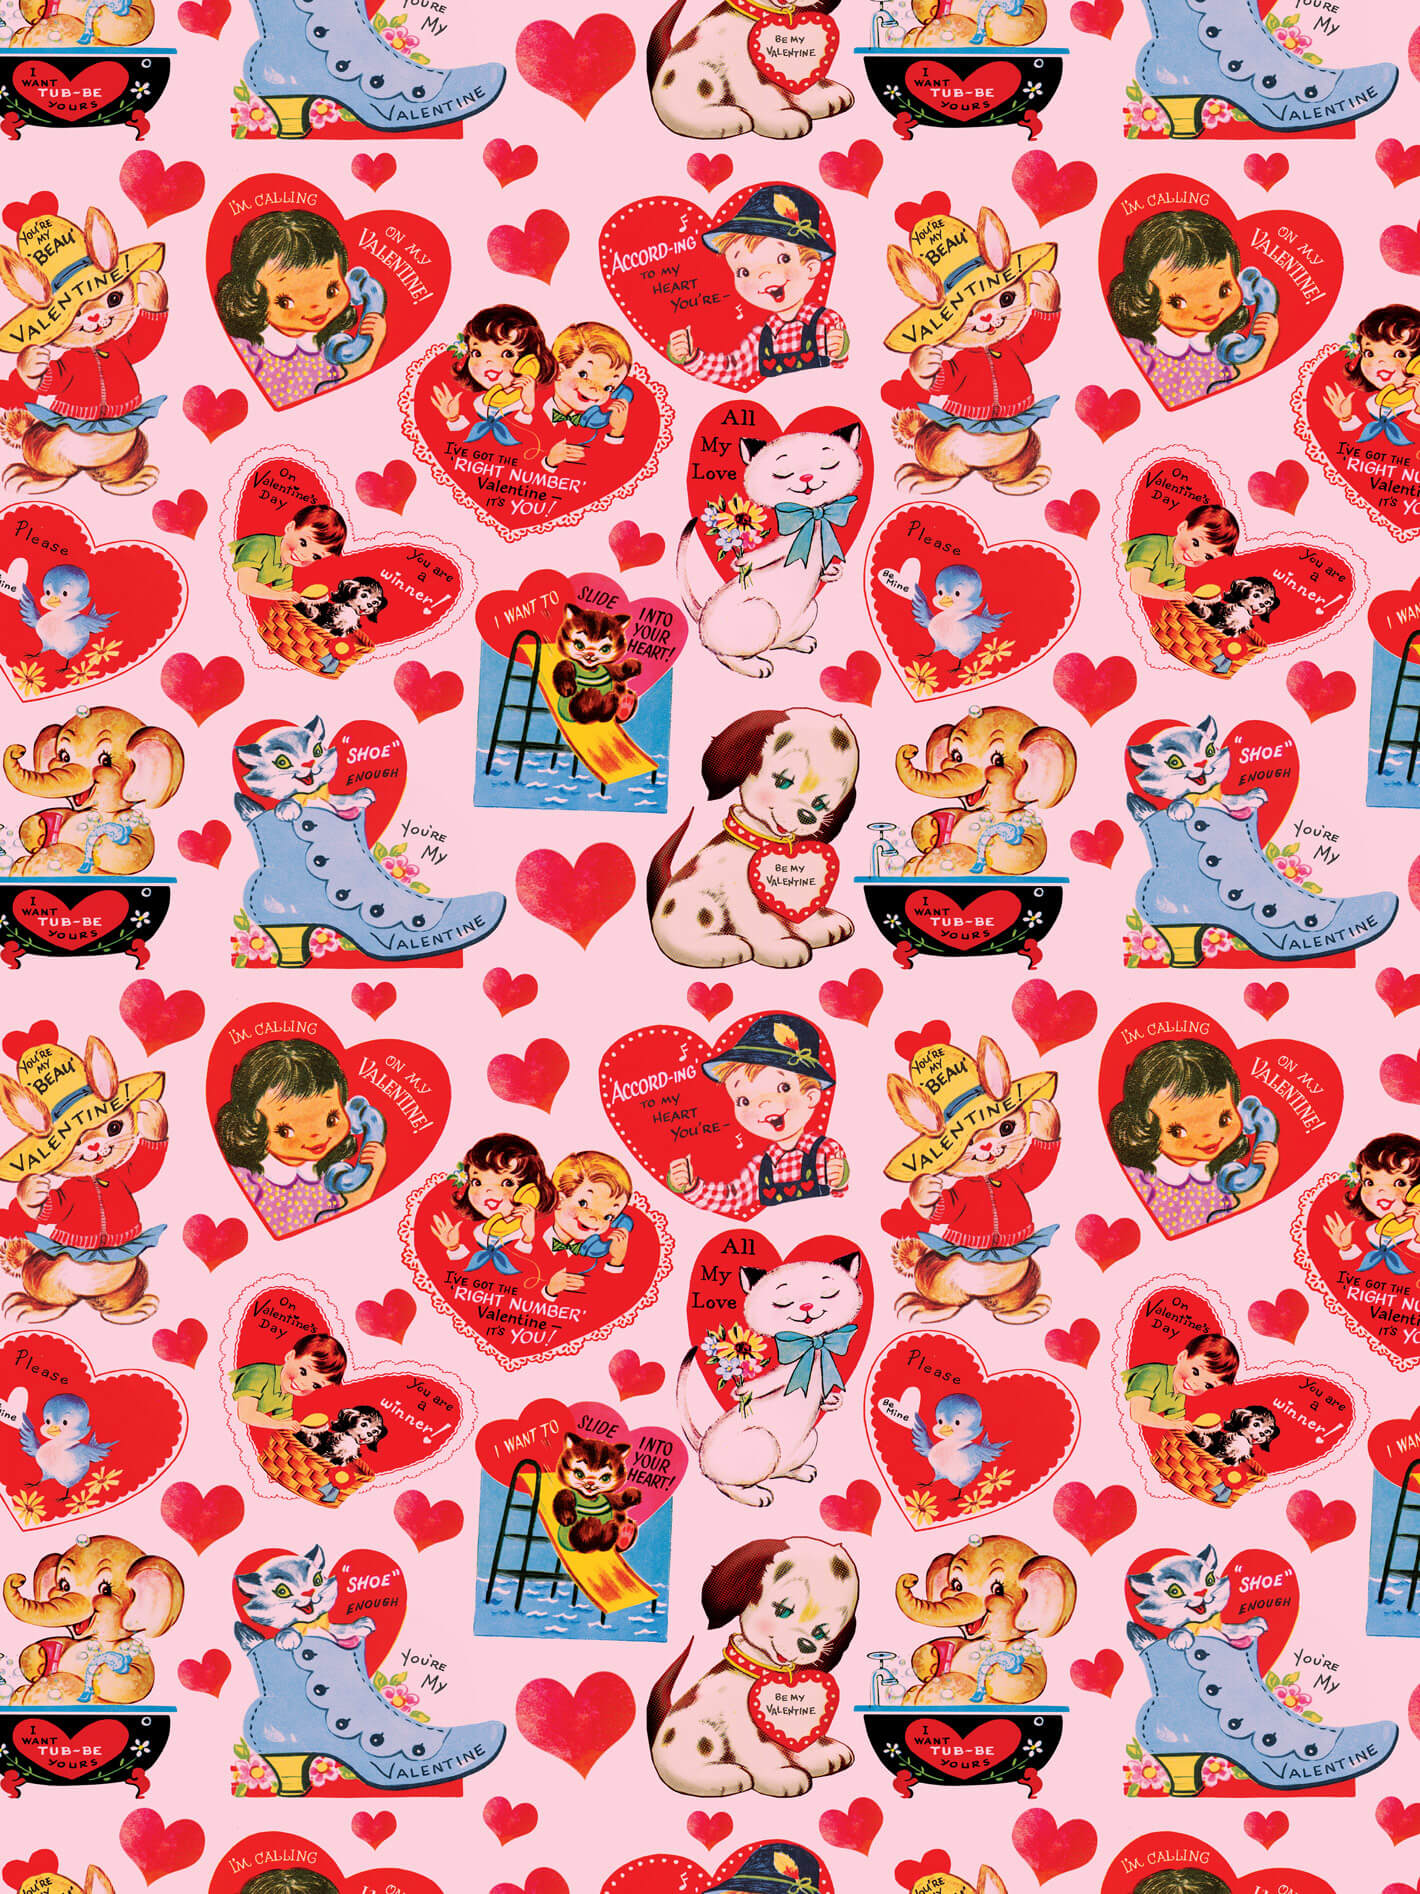 Kitschy Valentine heart pattern.